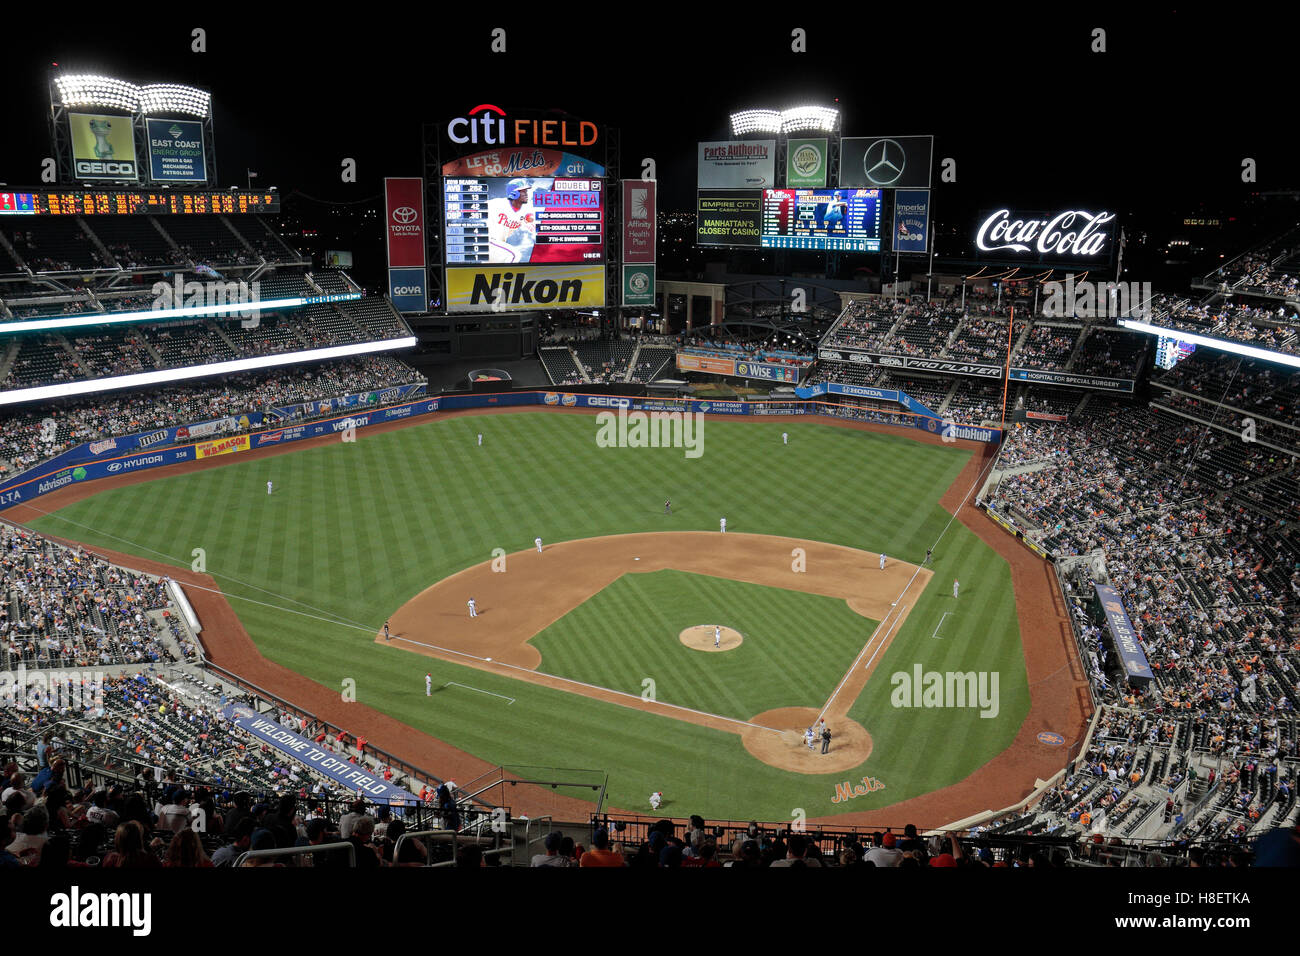 Tempo di notte vista di Citi Field, casa stadio della MLB New York Mets durante un gioco 2016, New York, Stati Uniti. Foto Stock